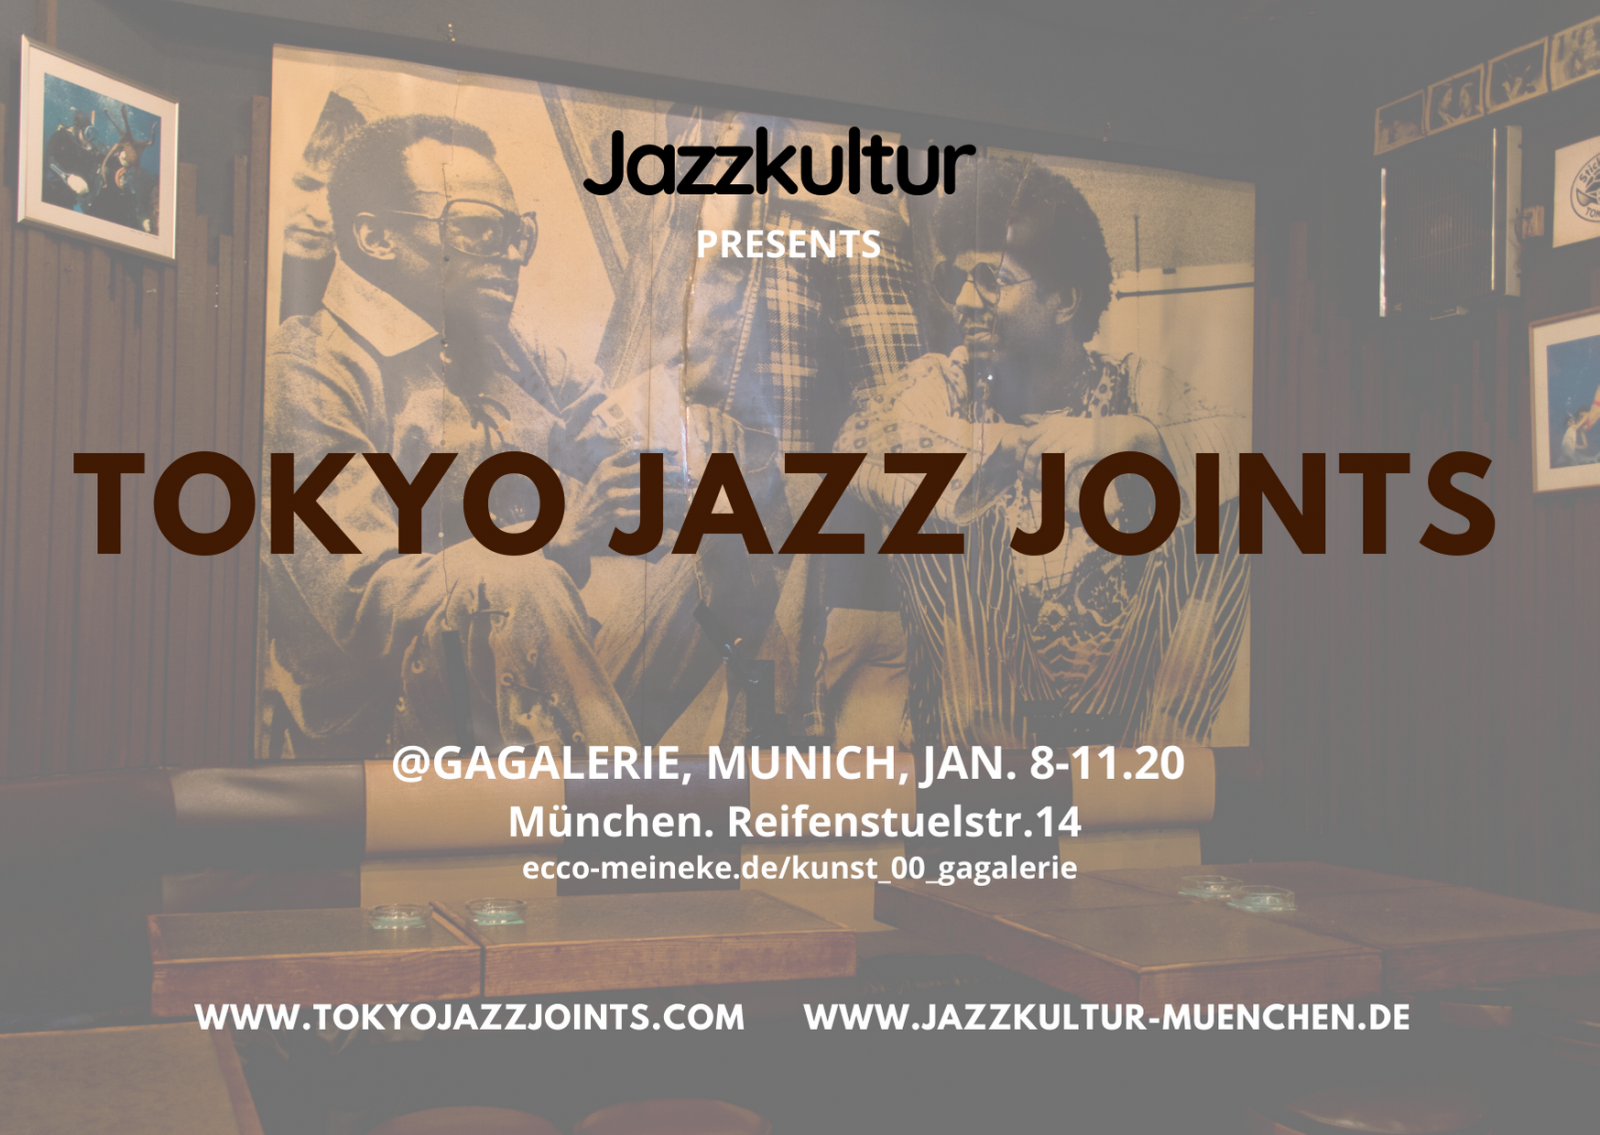 Tokyo Jazz Joints in Munich